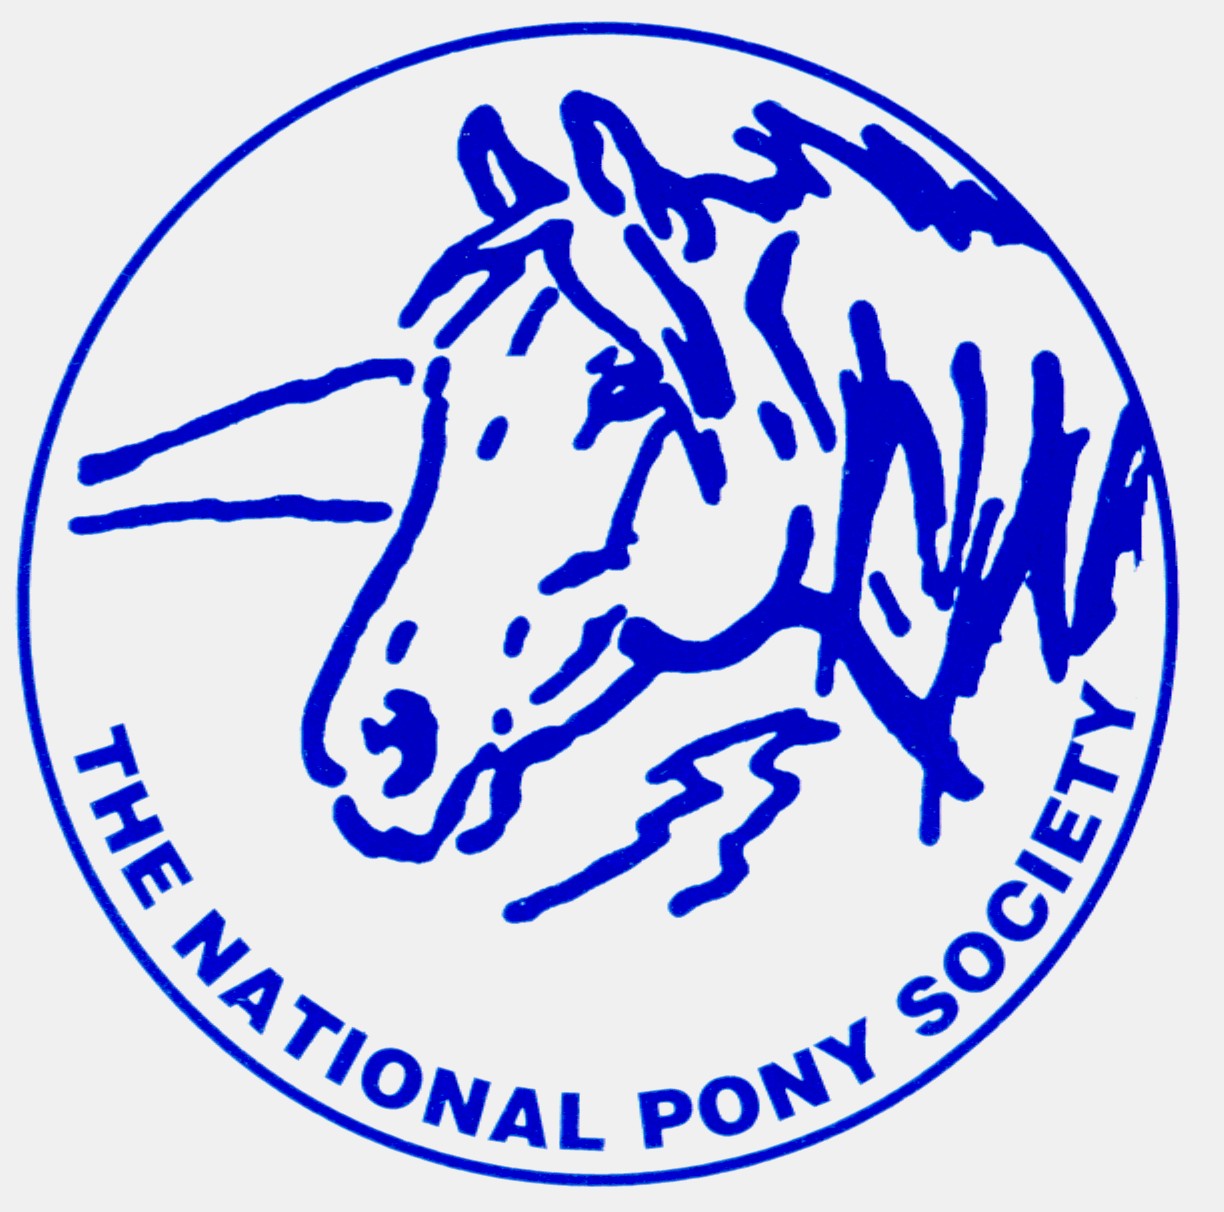 National Pony Society